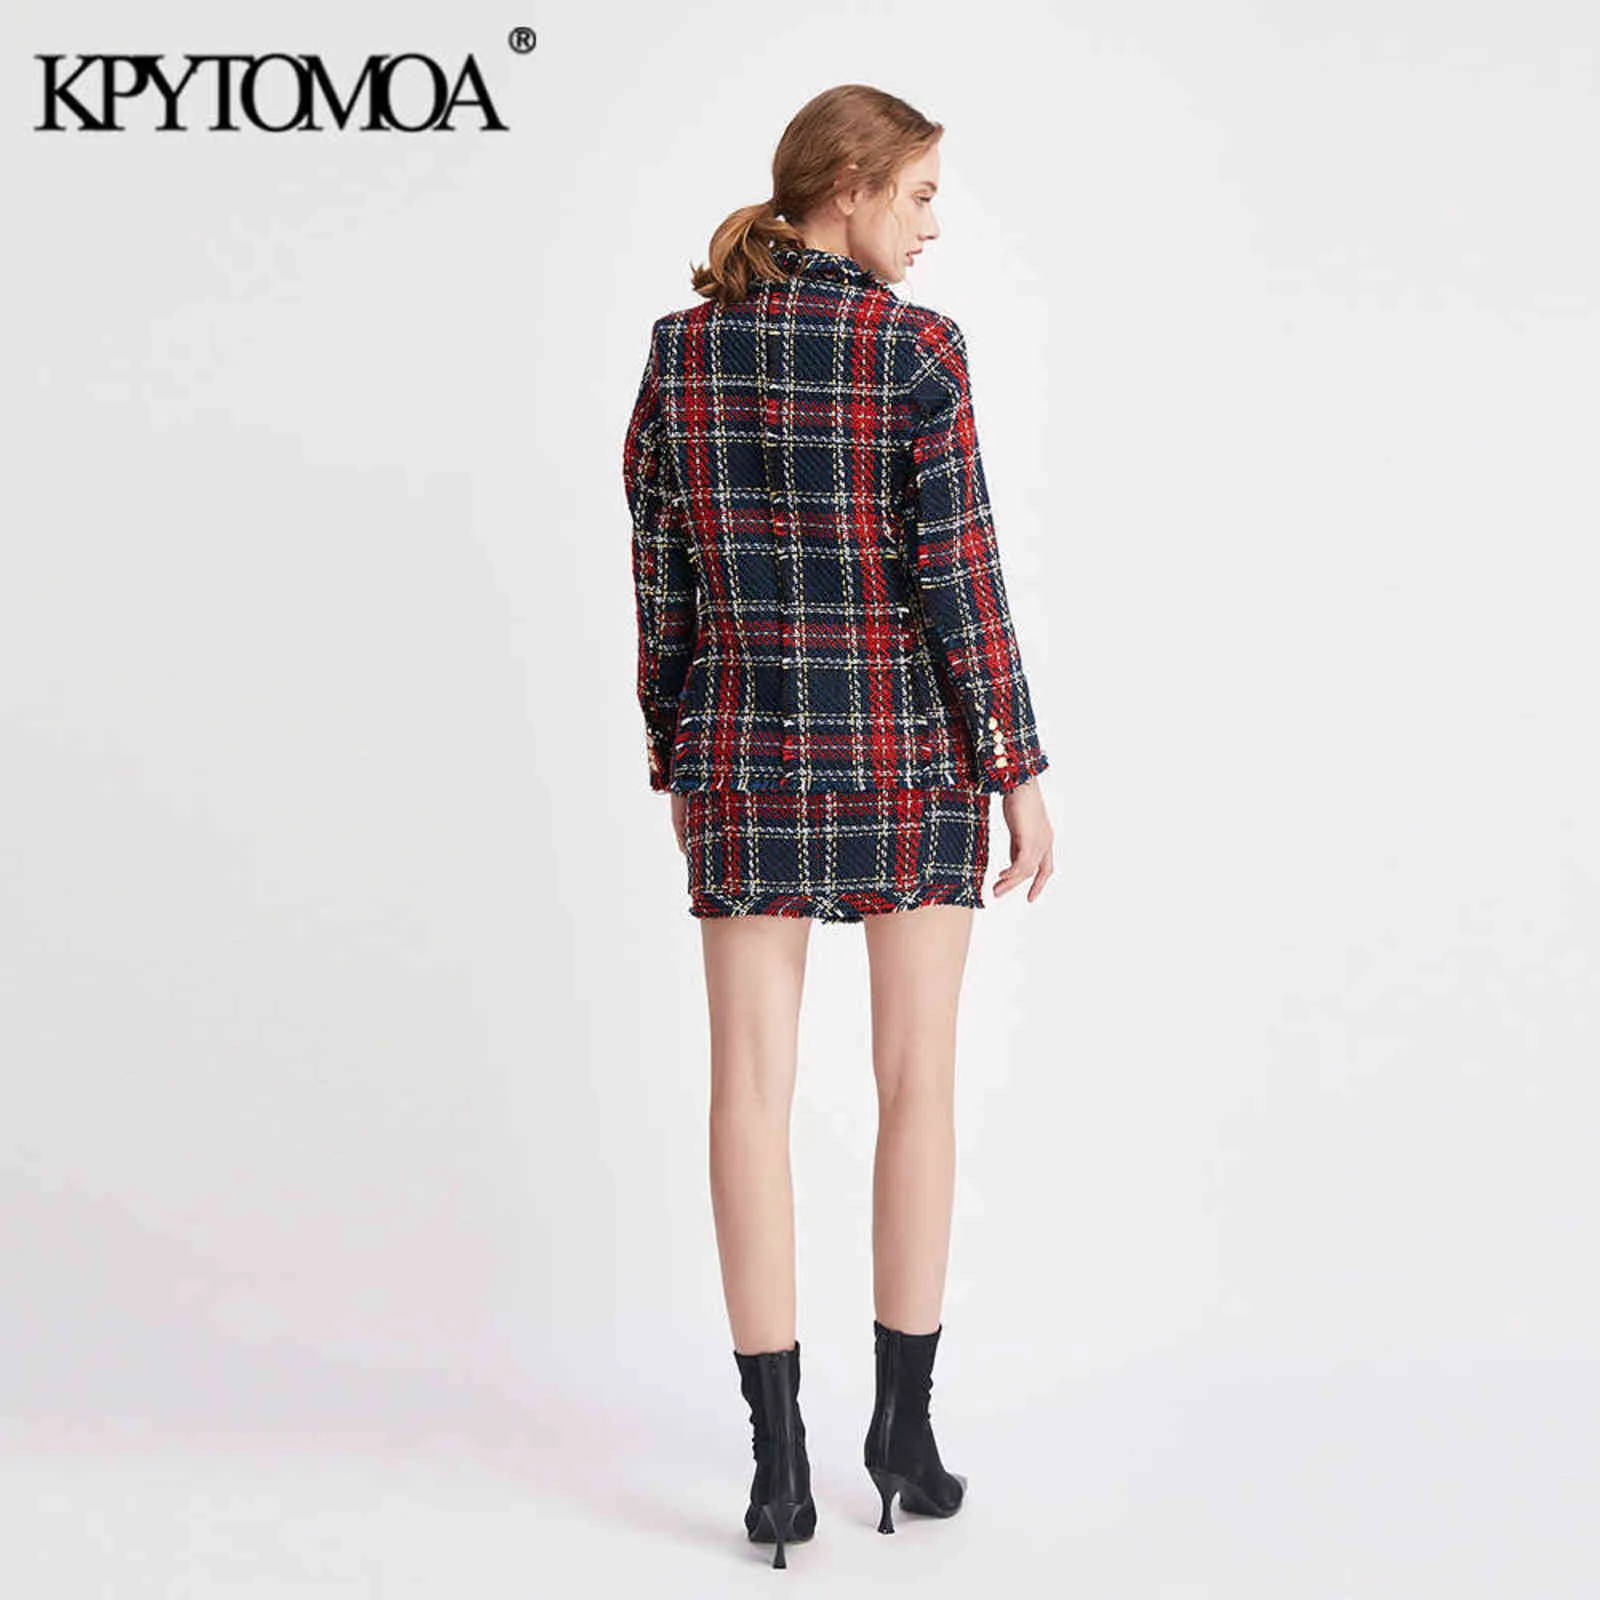 KPYTOMOA Frauen Mode Zweireiher Ausgefranste Check Tweed Blazer Mantel Vintage Lange Hülse Weibliche Oberbekleidung Chic Tops 211122